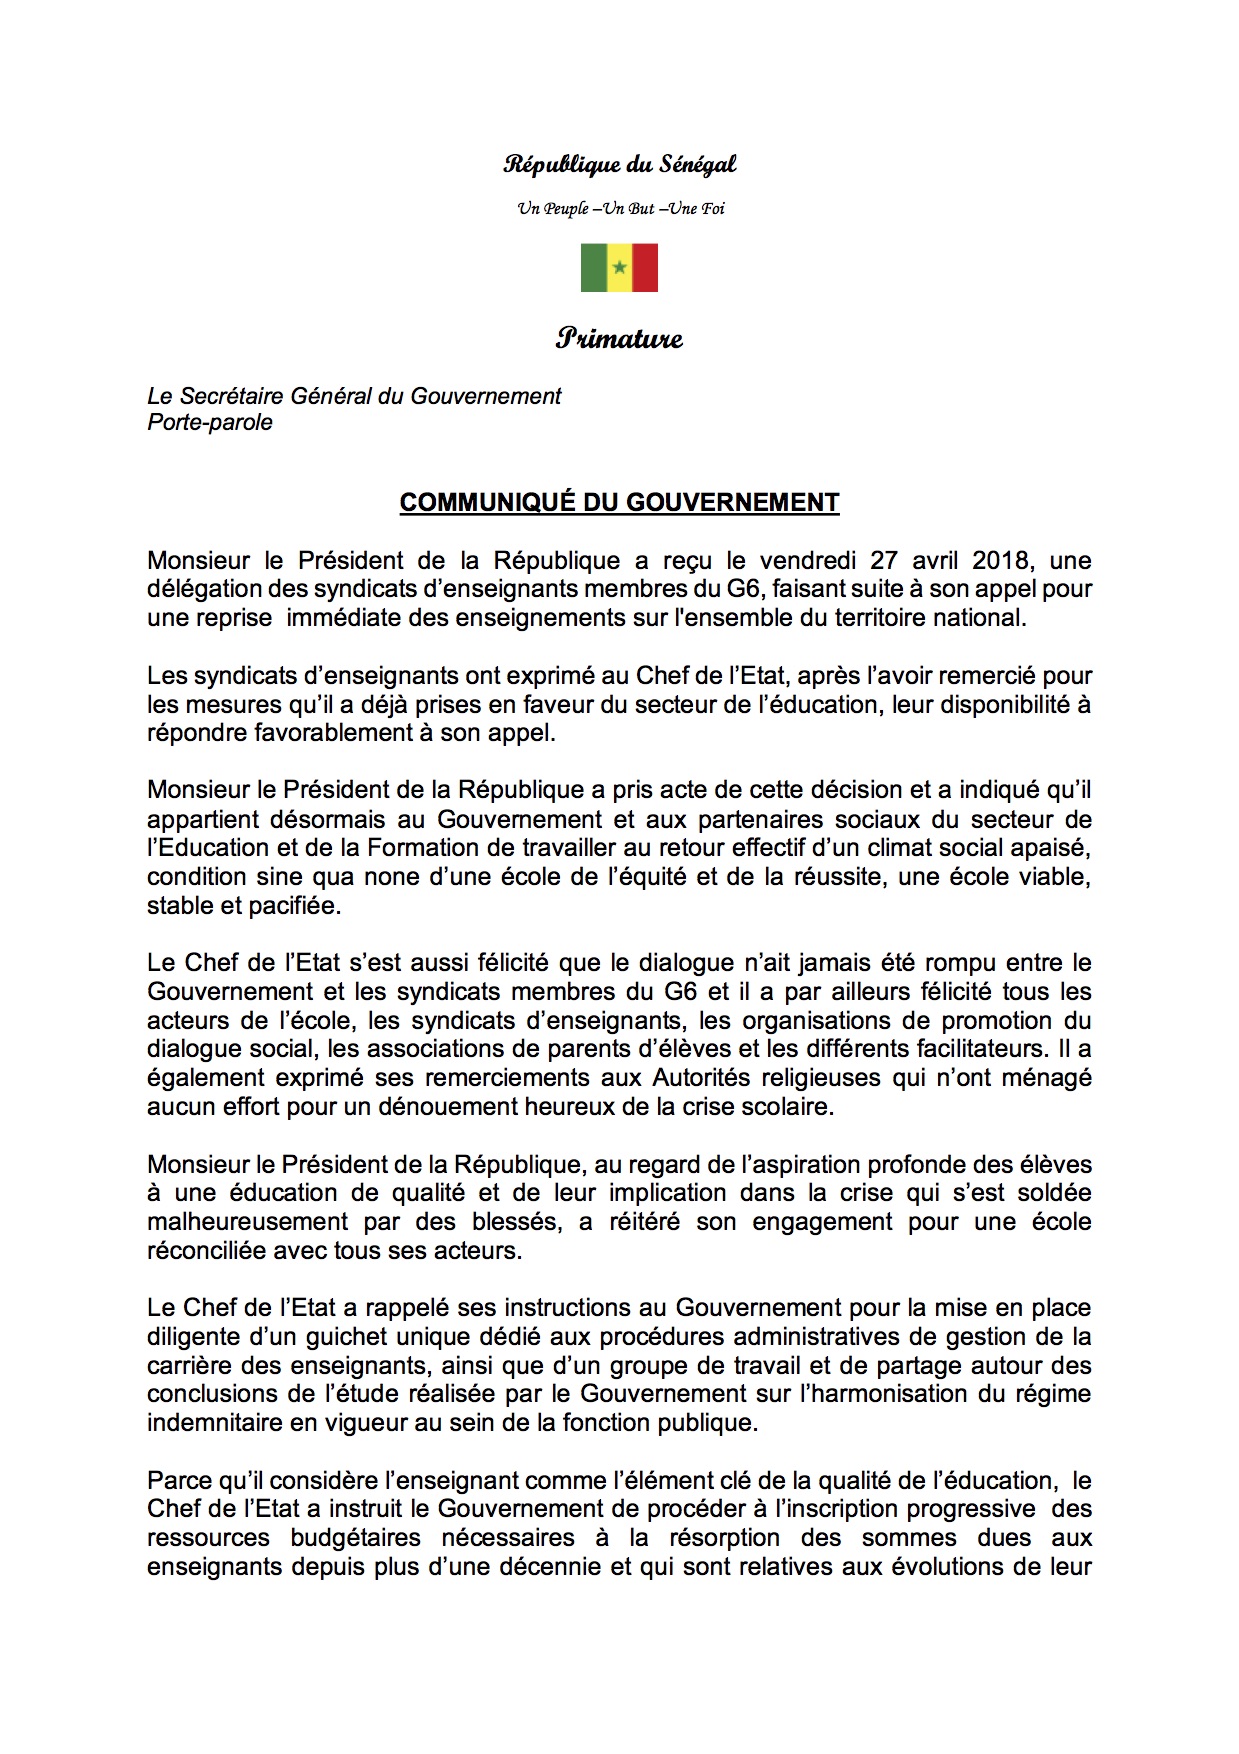 Documents - Le G 6 décide de suspendre son mot d’ordre : Dénouement de la crise scolaire-  Macky Sall sauve le Sénégal d’une année blanche